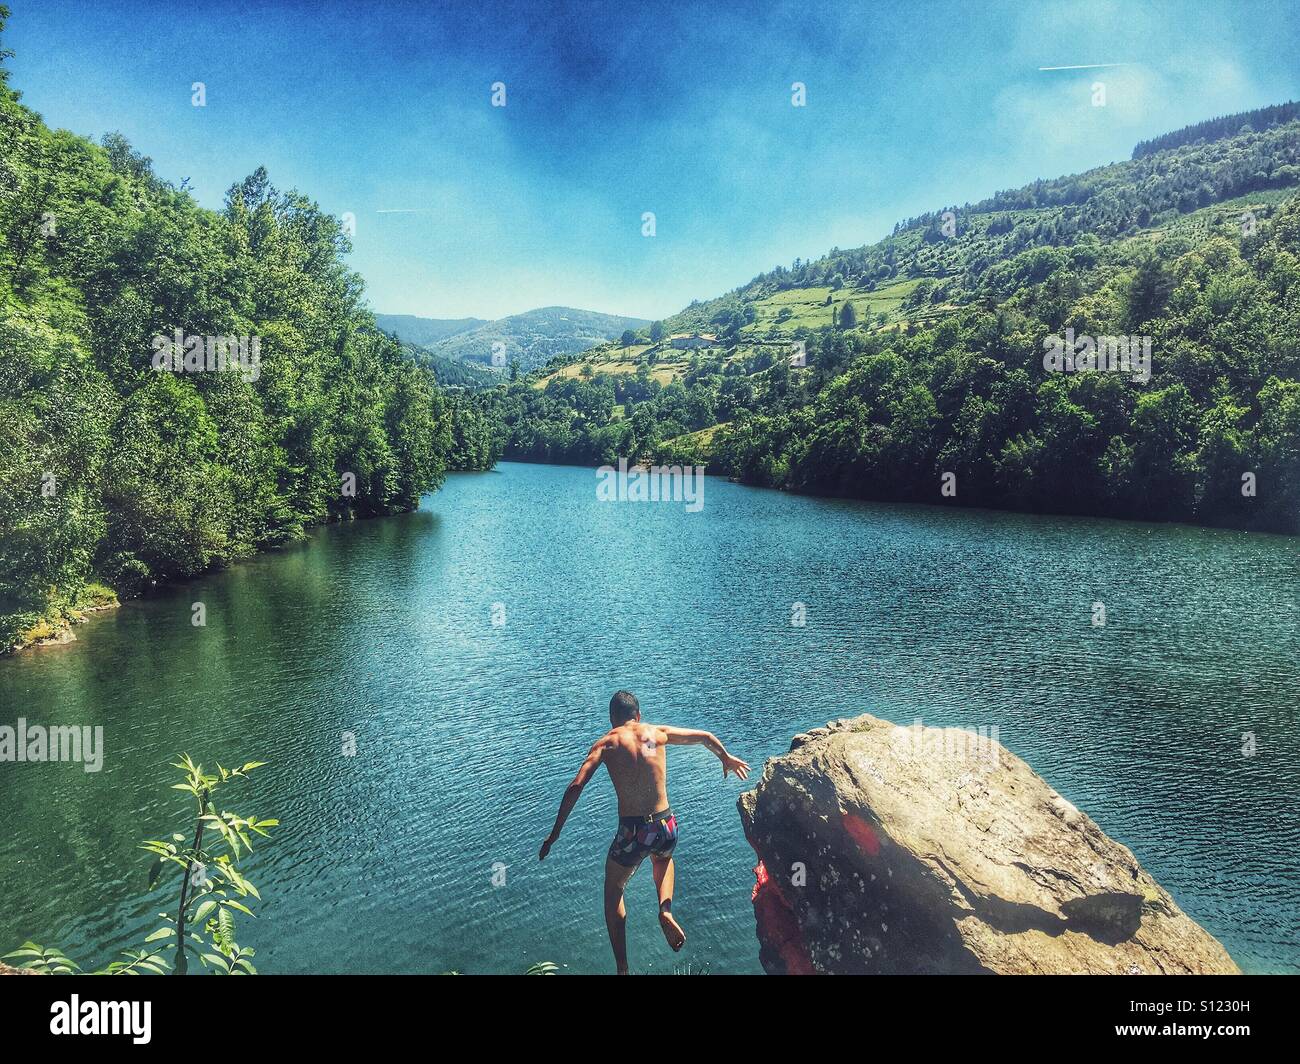 Man jumping in lake Stock Photo